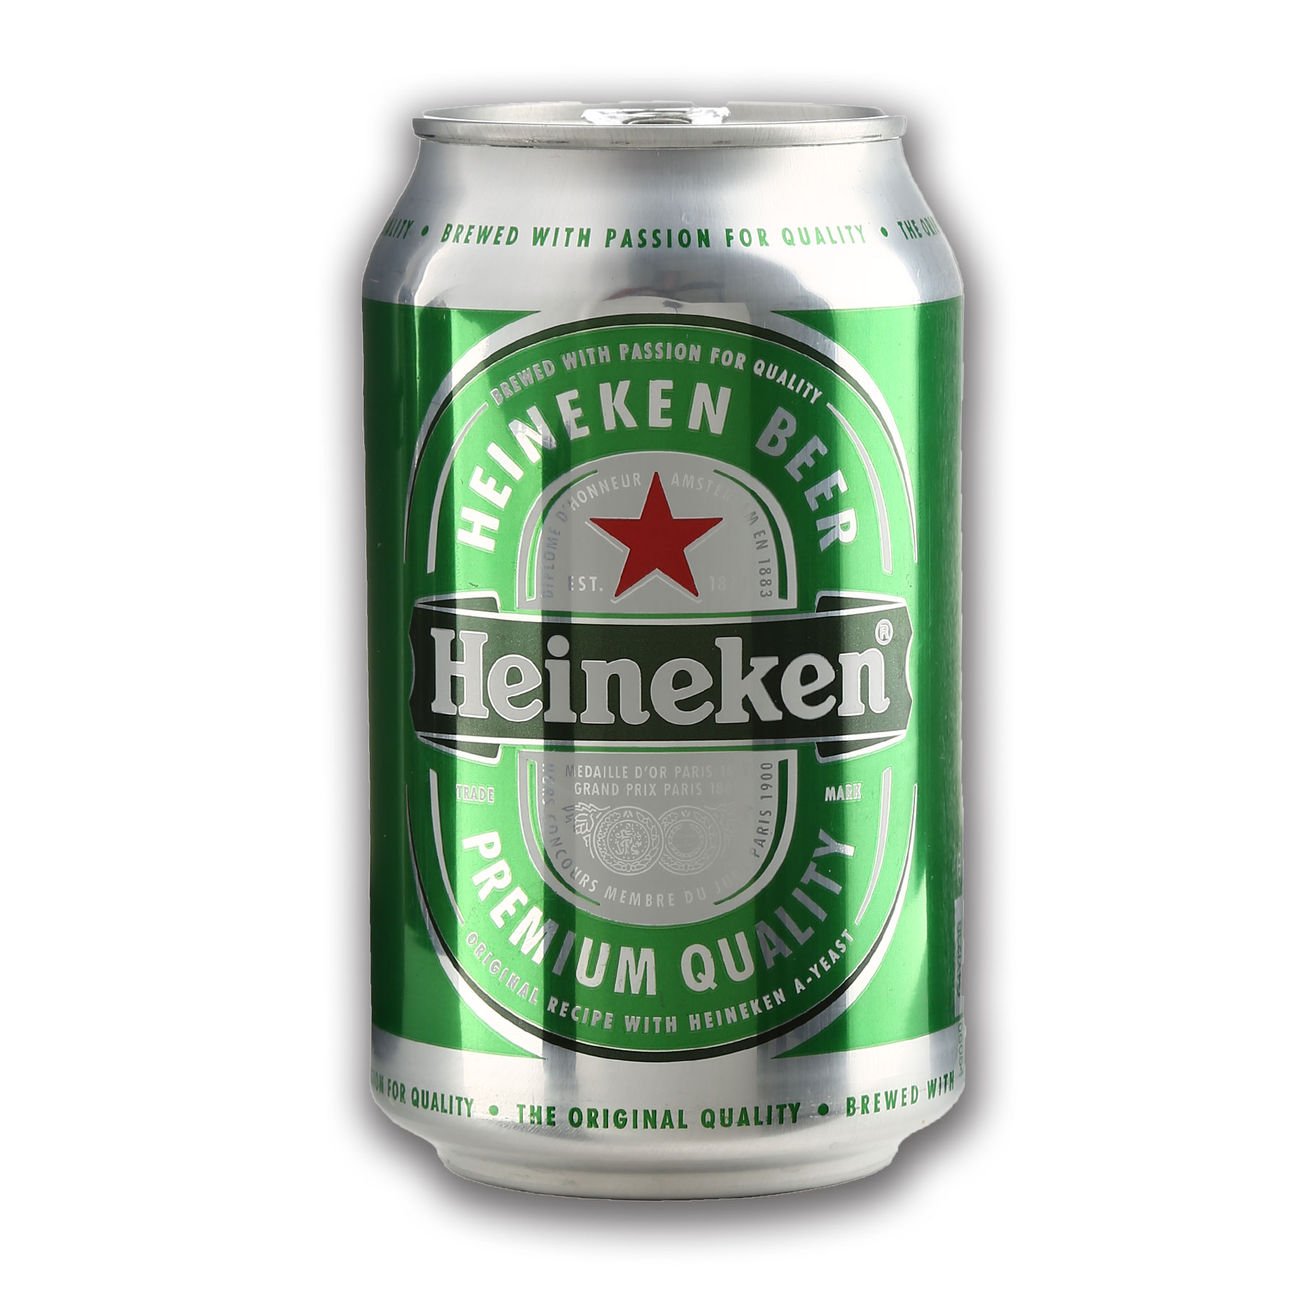 Dosensafe Bier Heineken Kotte Zeller